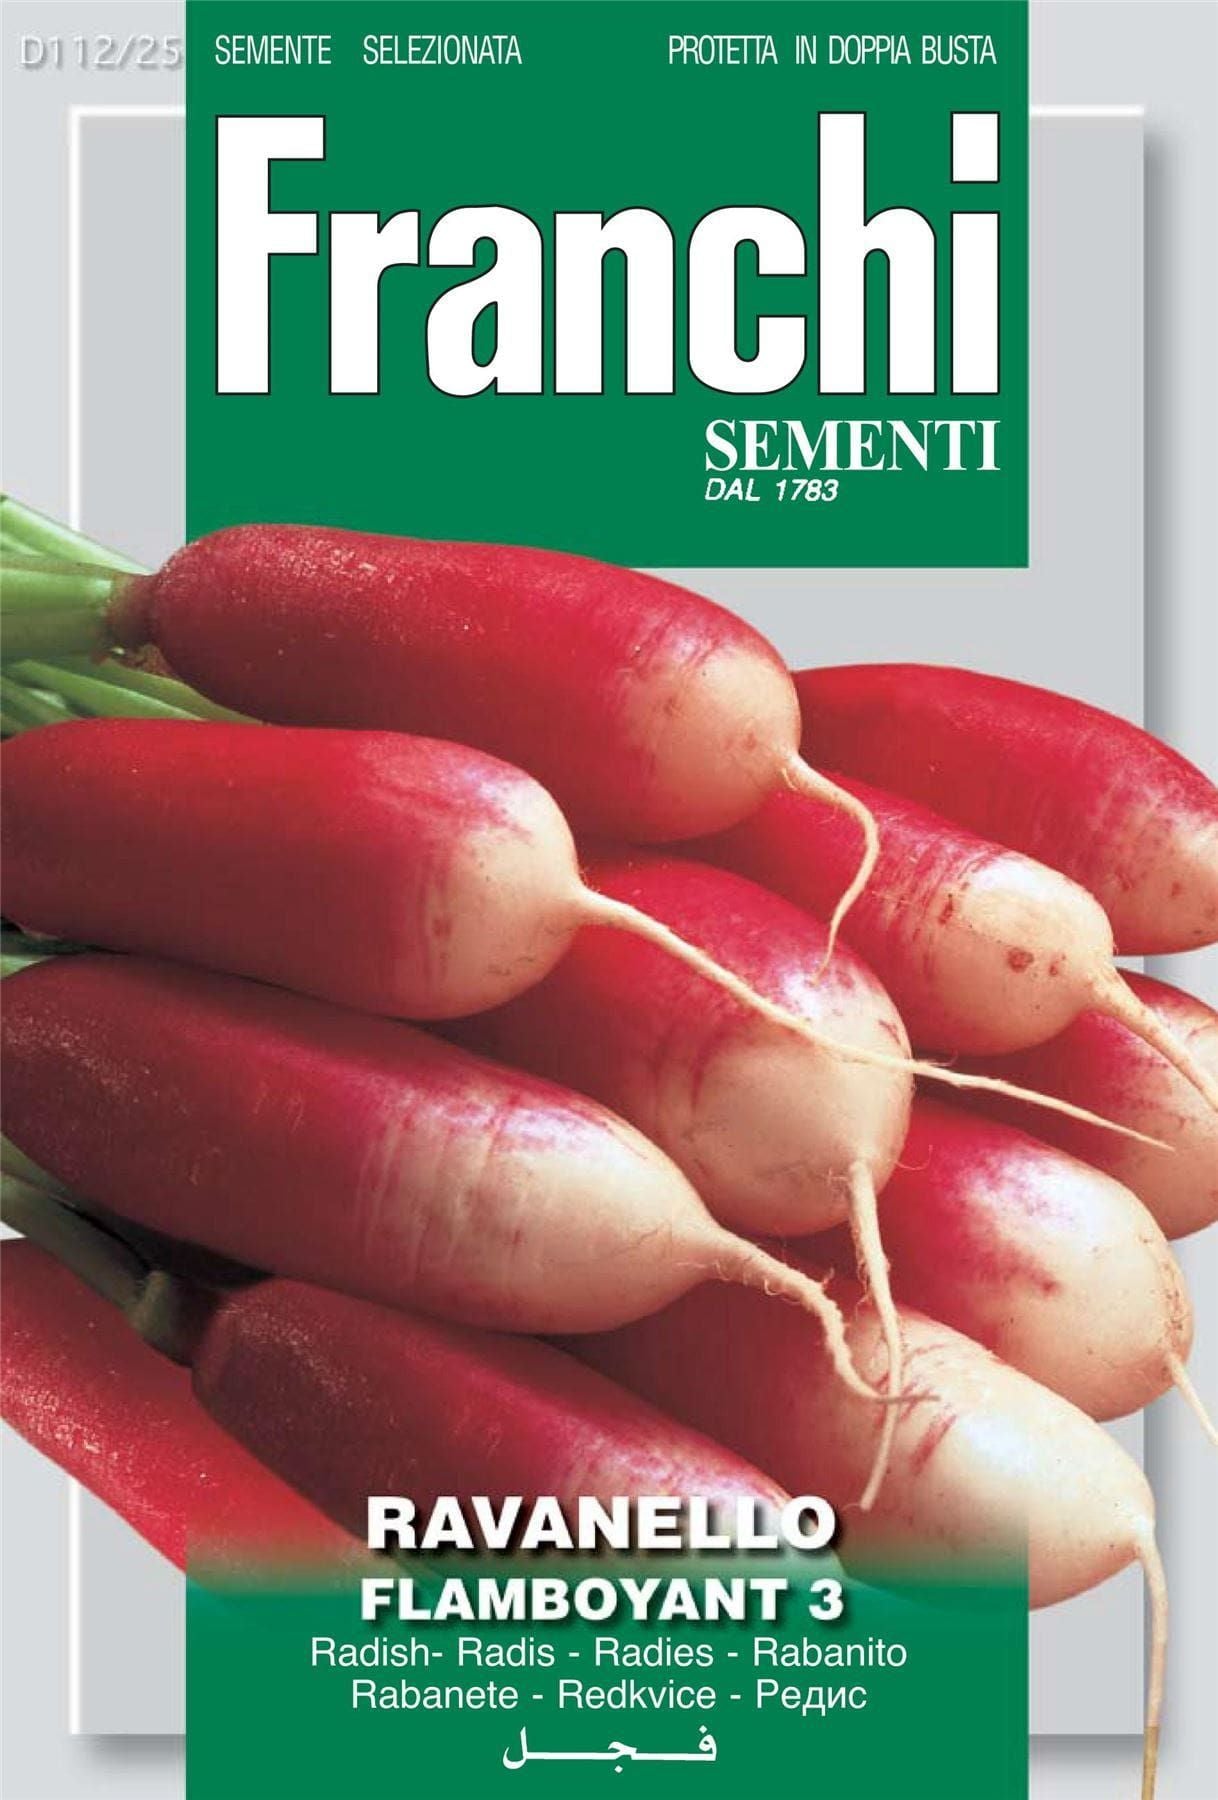 Franchi Seeds of Italy Radish Flamboyant 3 - Seeds